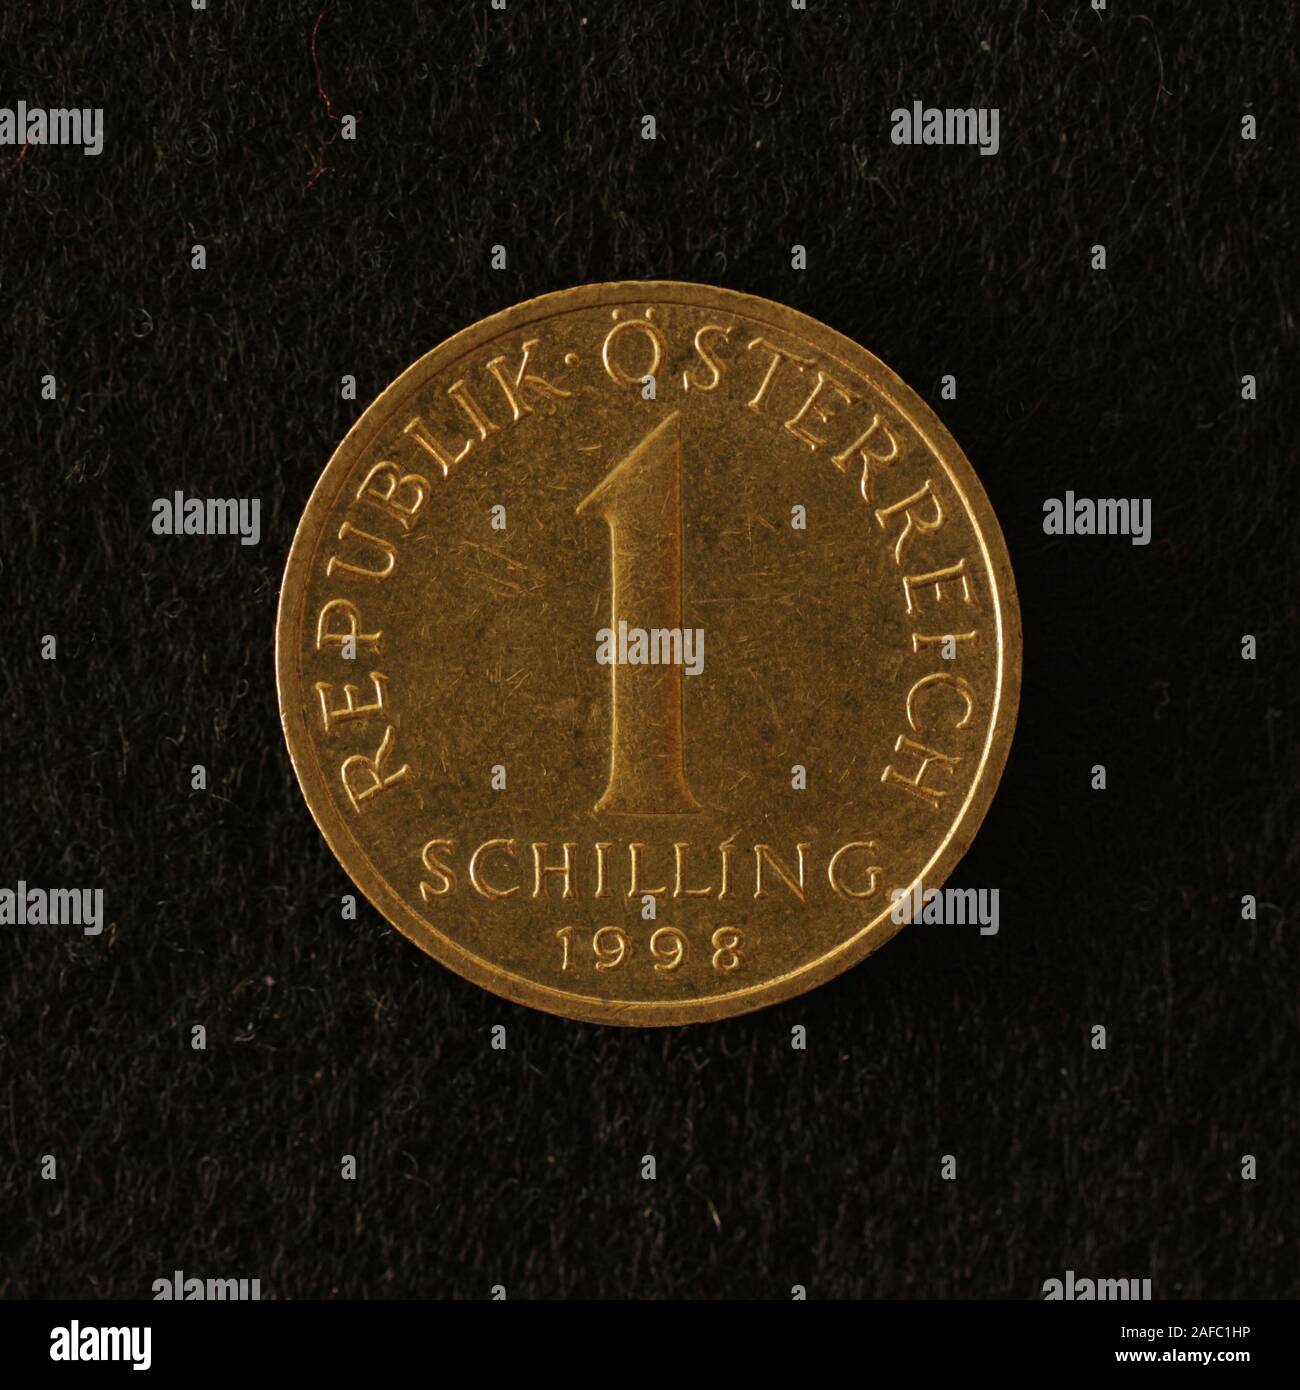 Vorderseite einer ehemaligen Österreichischen 1 Schilling Münze Stock Photo